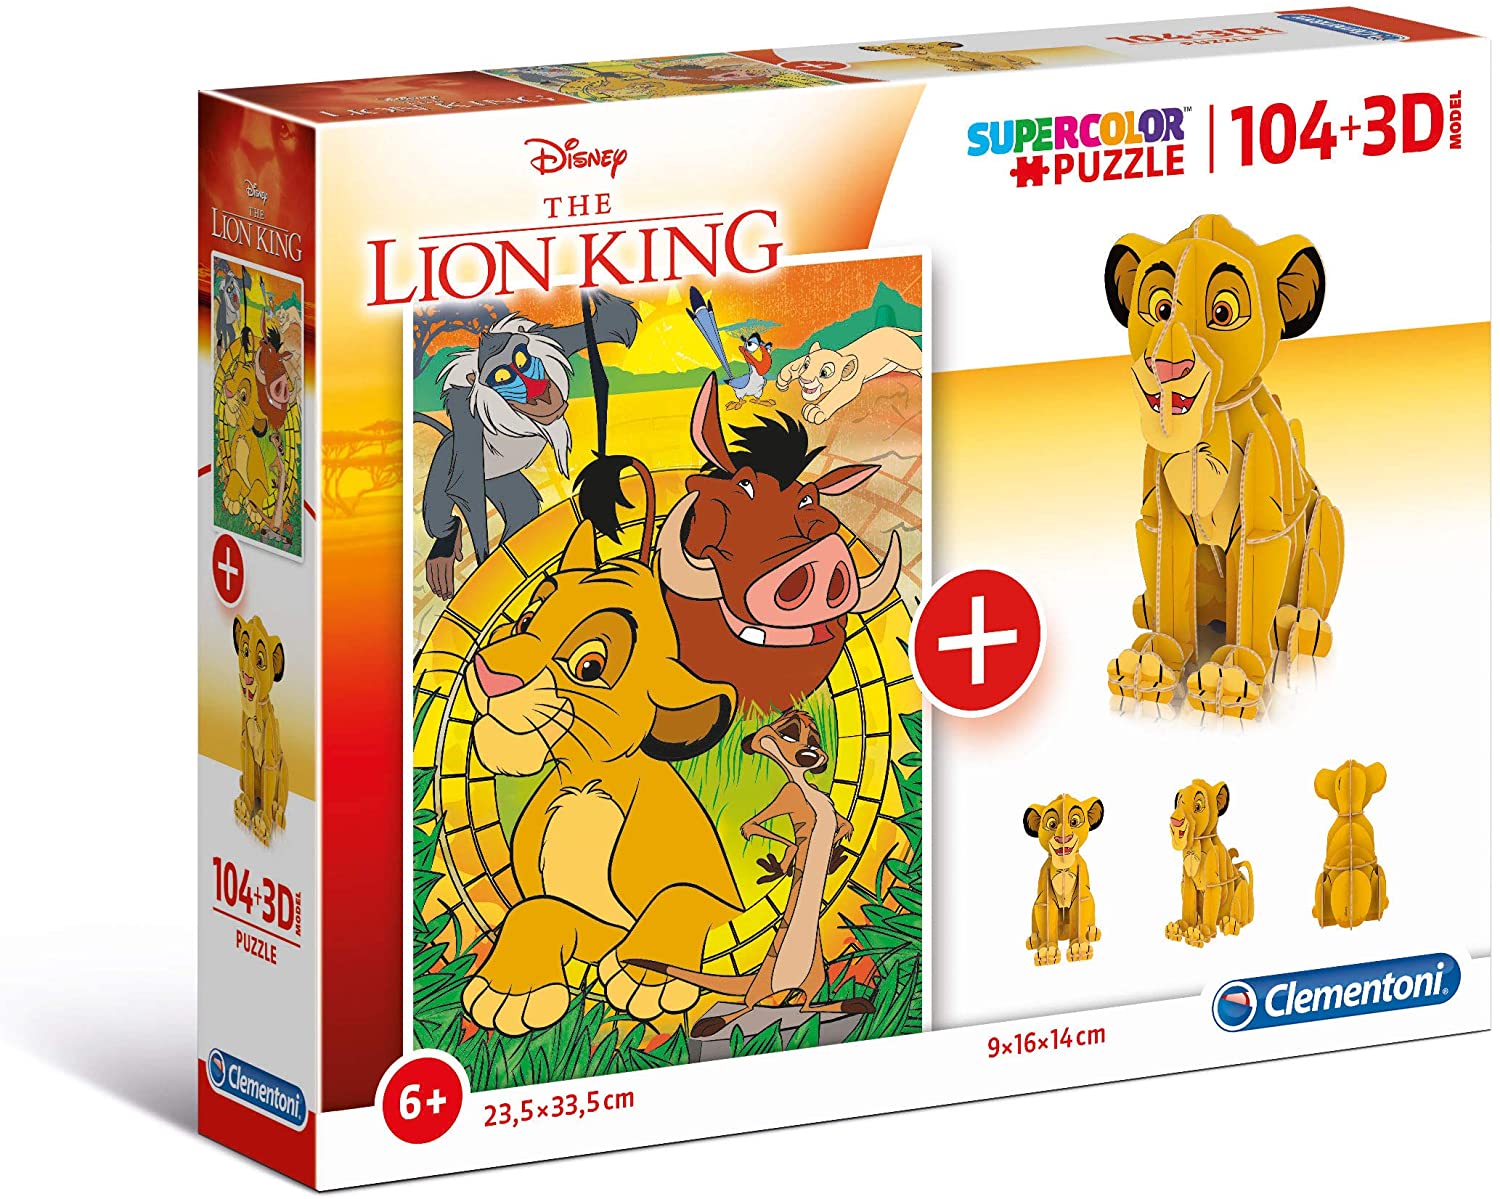 The Lion King (Puzzle + 3D Model) Clementoni-20158 104 pieces